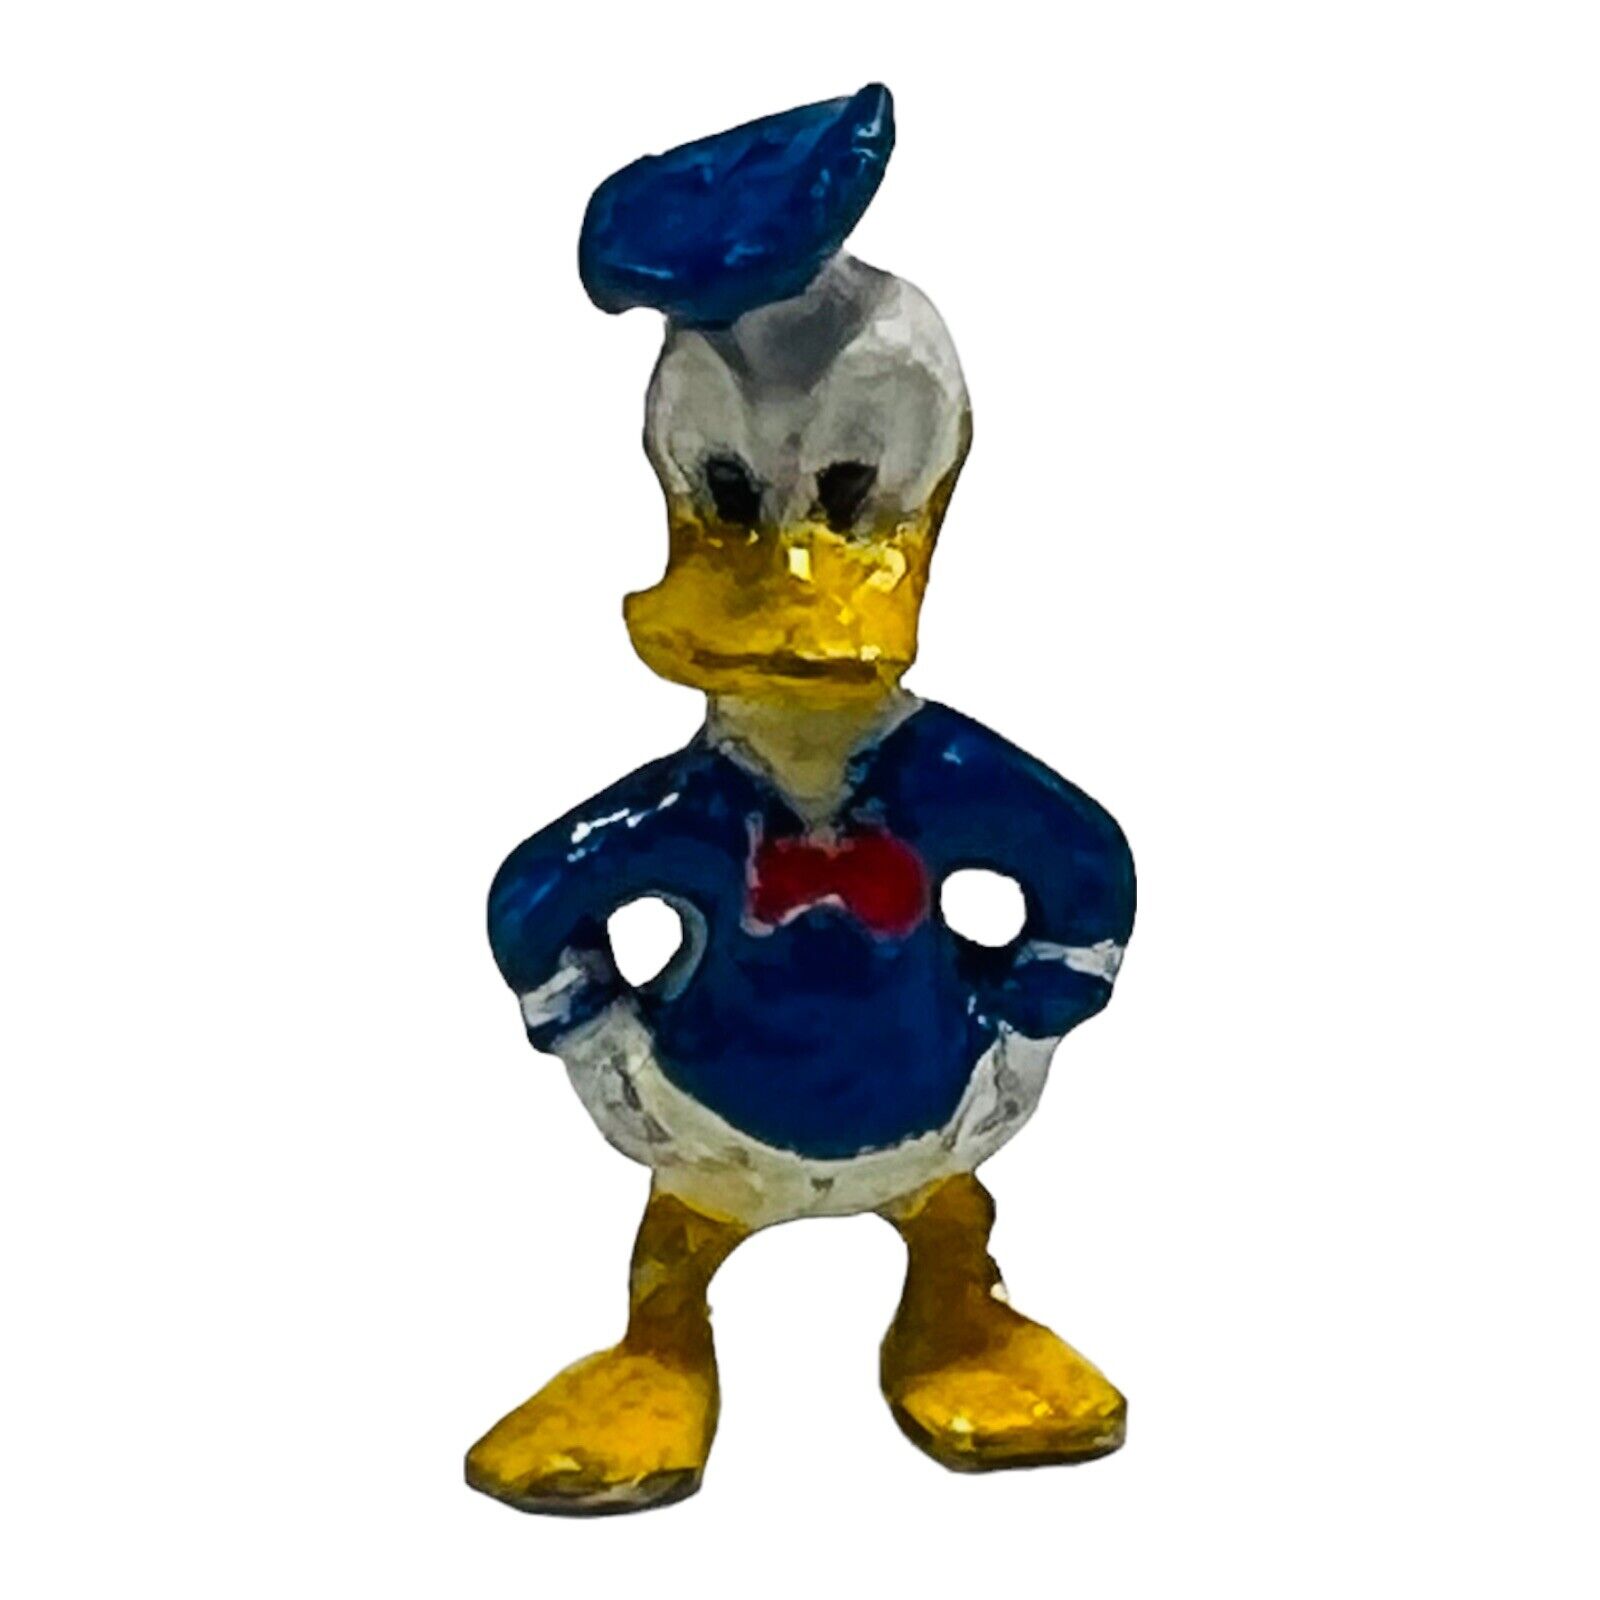 Disney Miniature Donald Duck Figure Micro Figurine 0.75